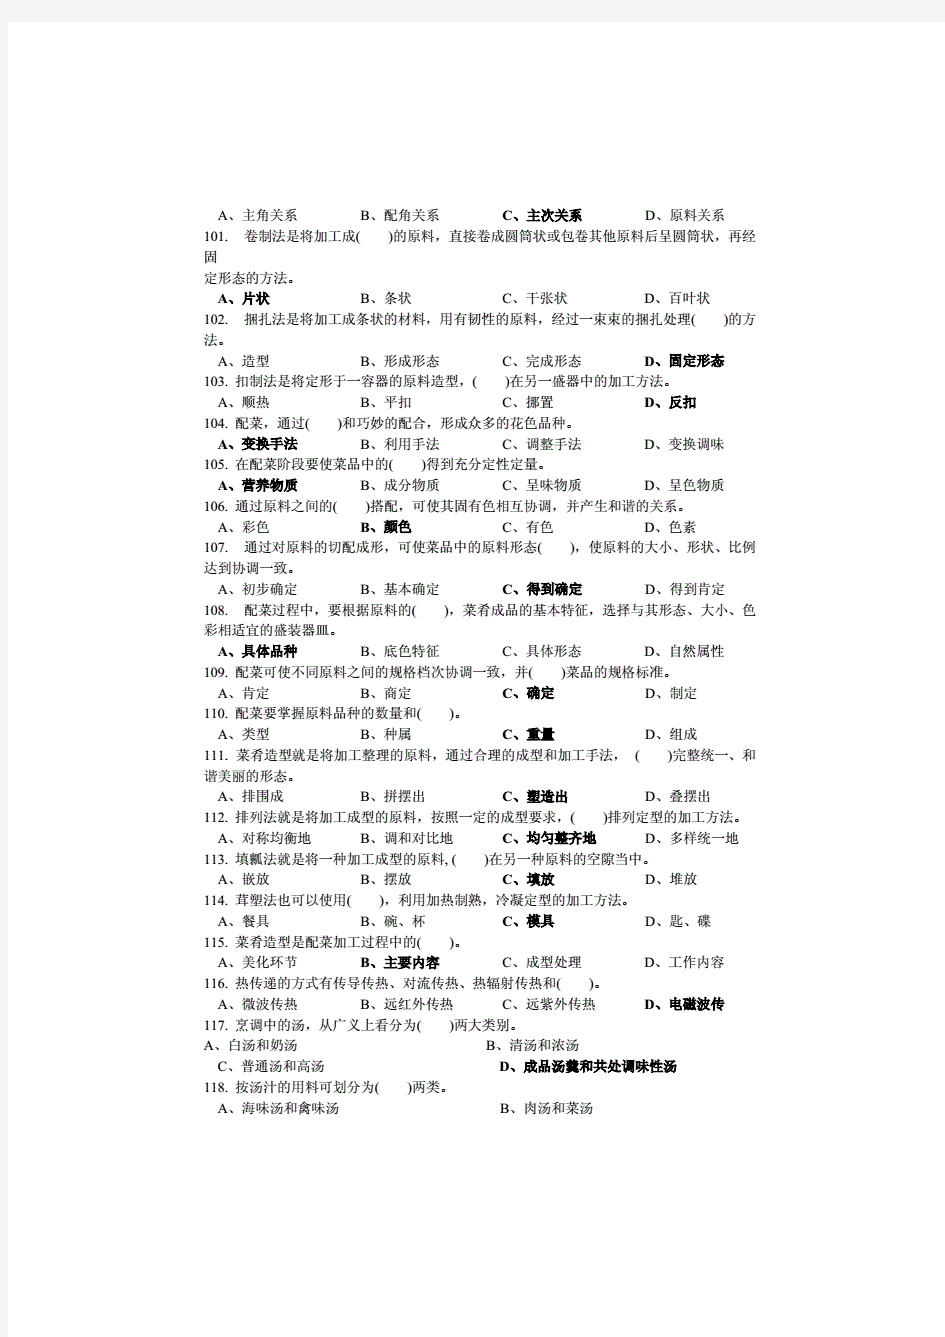 中式烹调师中级理论知识试卷3(附答案)